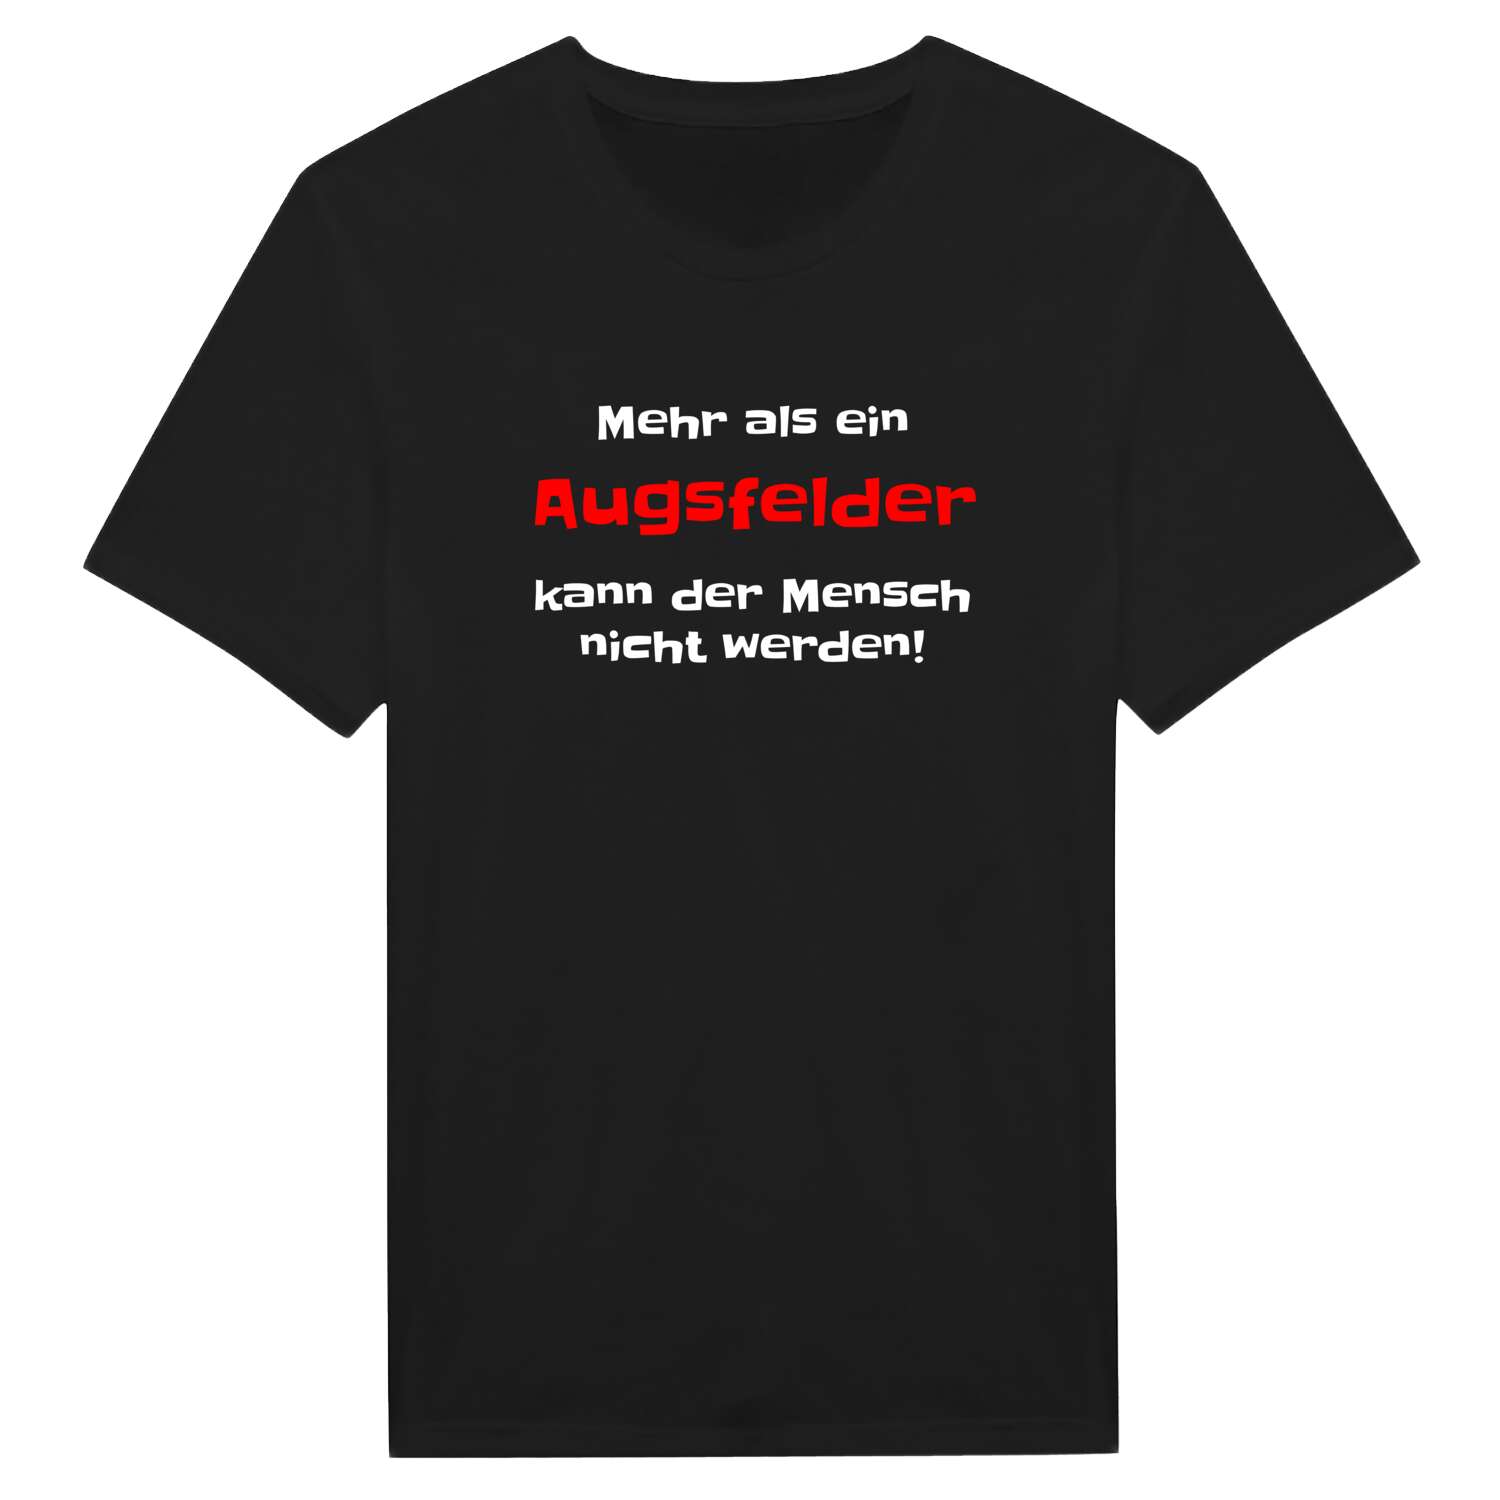 Augsfeld T-Shirt »Mehr als ein«